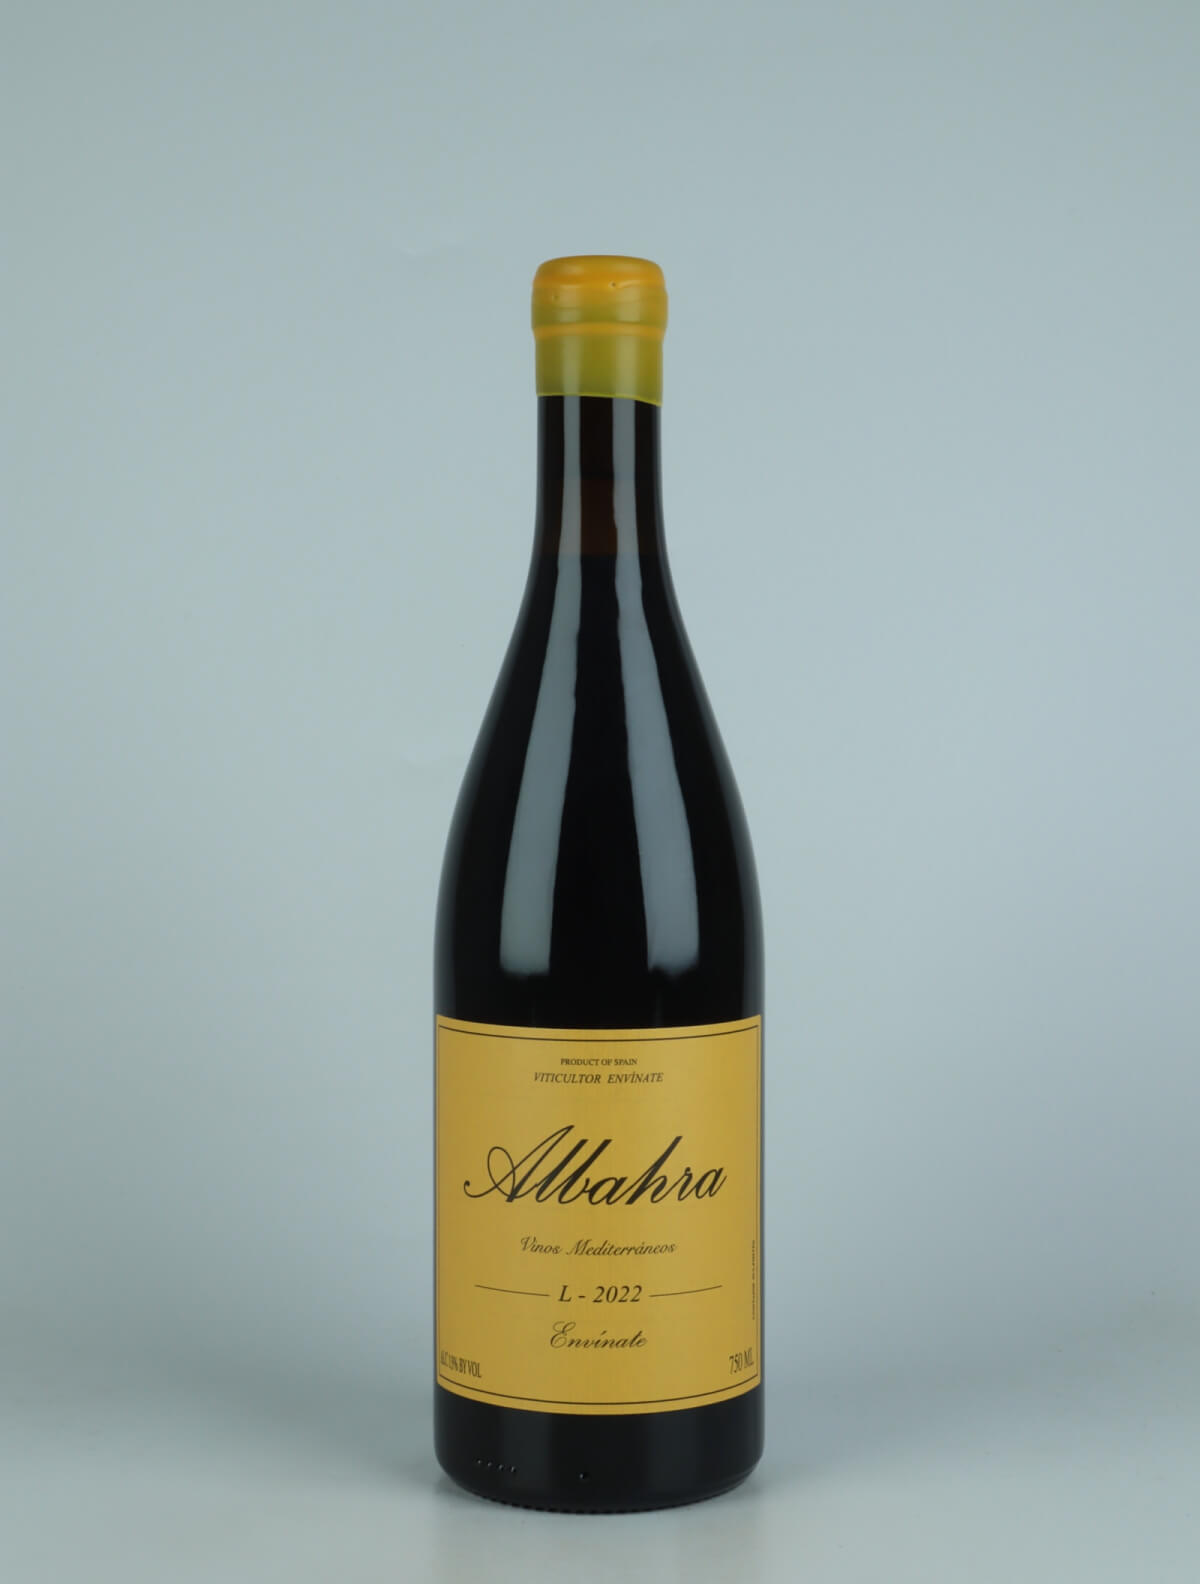 En flaske 2022 Albahra - Almansa Rødvin fra Envínate, Almansa i Spanien